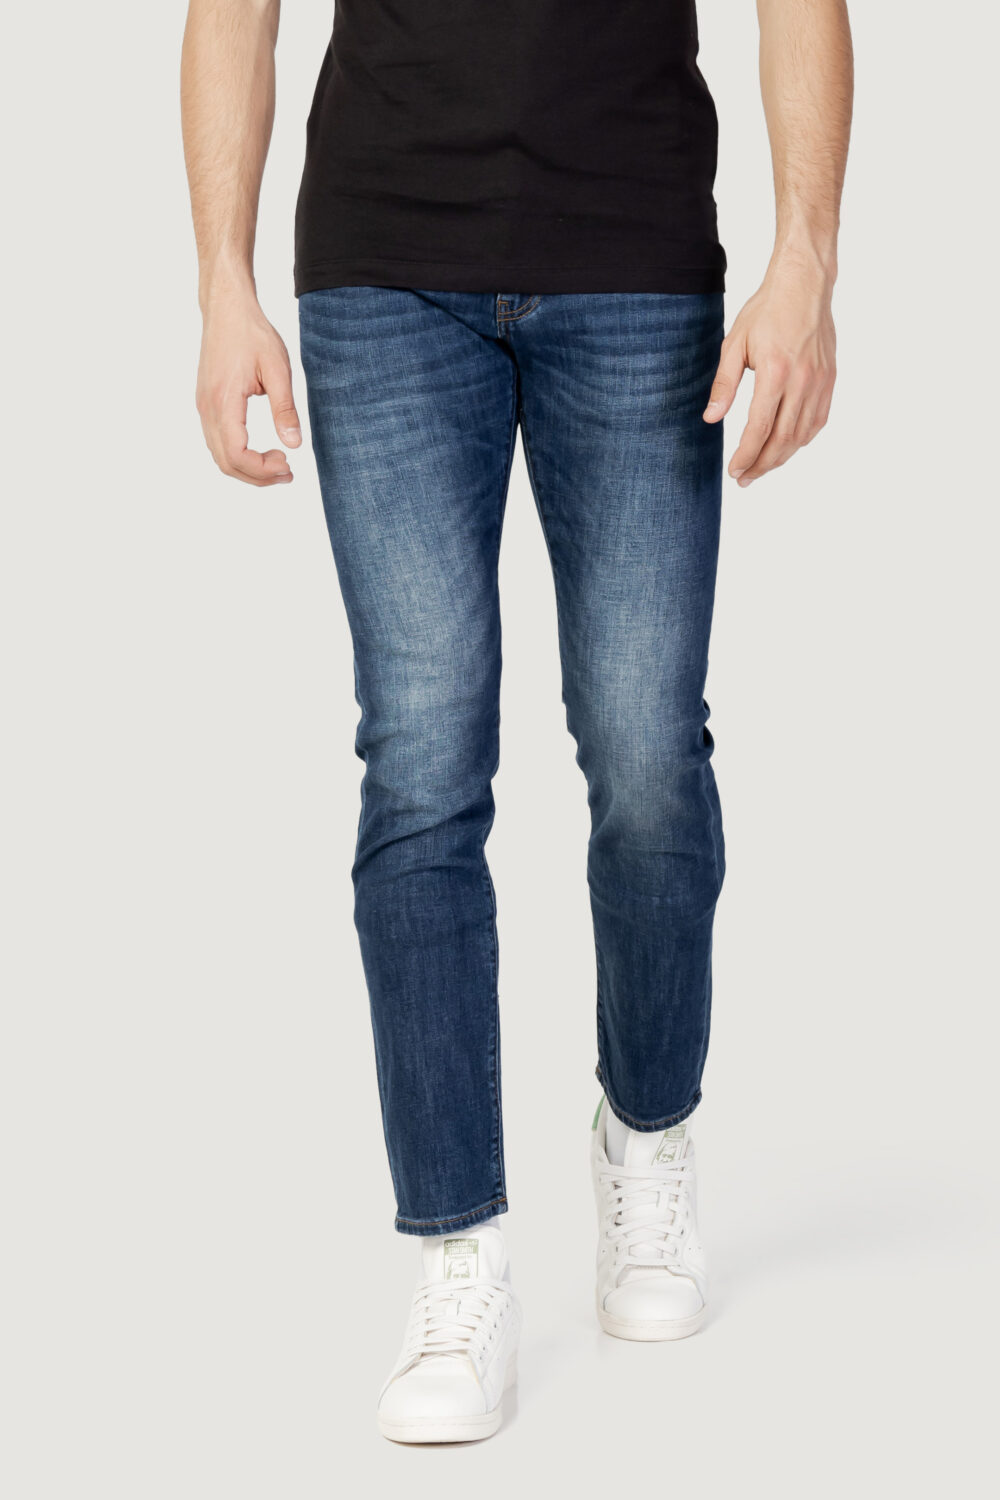 Jeans skinny Armani Exchange tinta unita Indigo - Foto 1